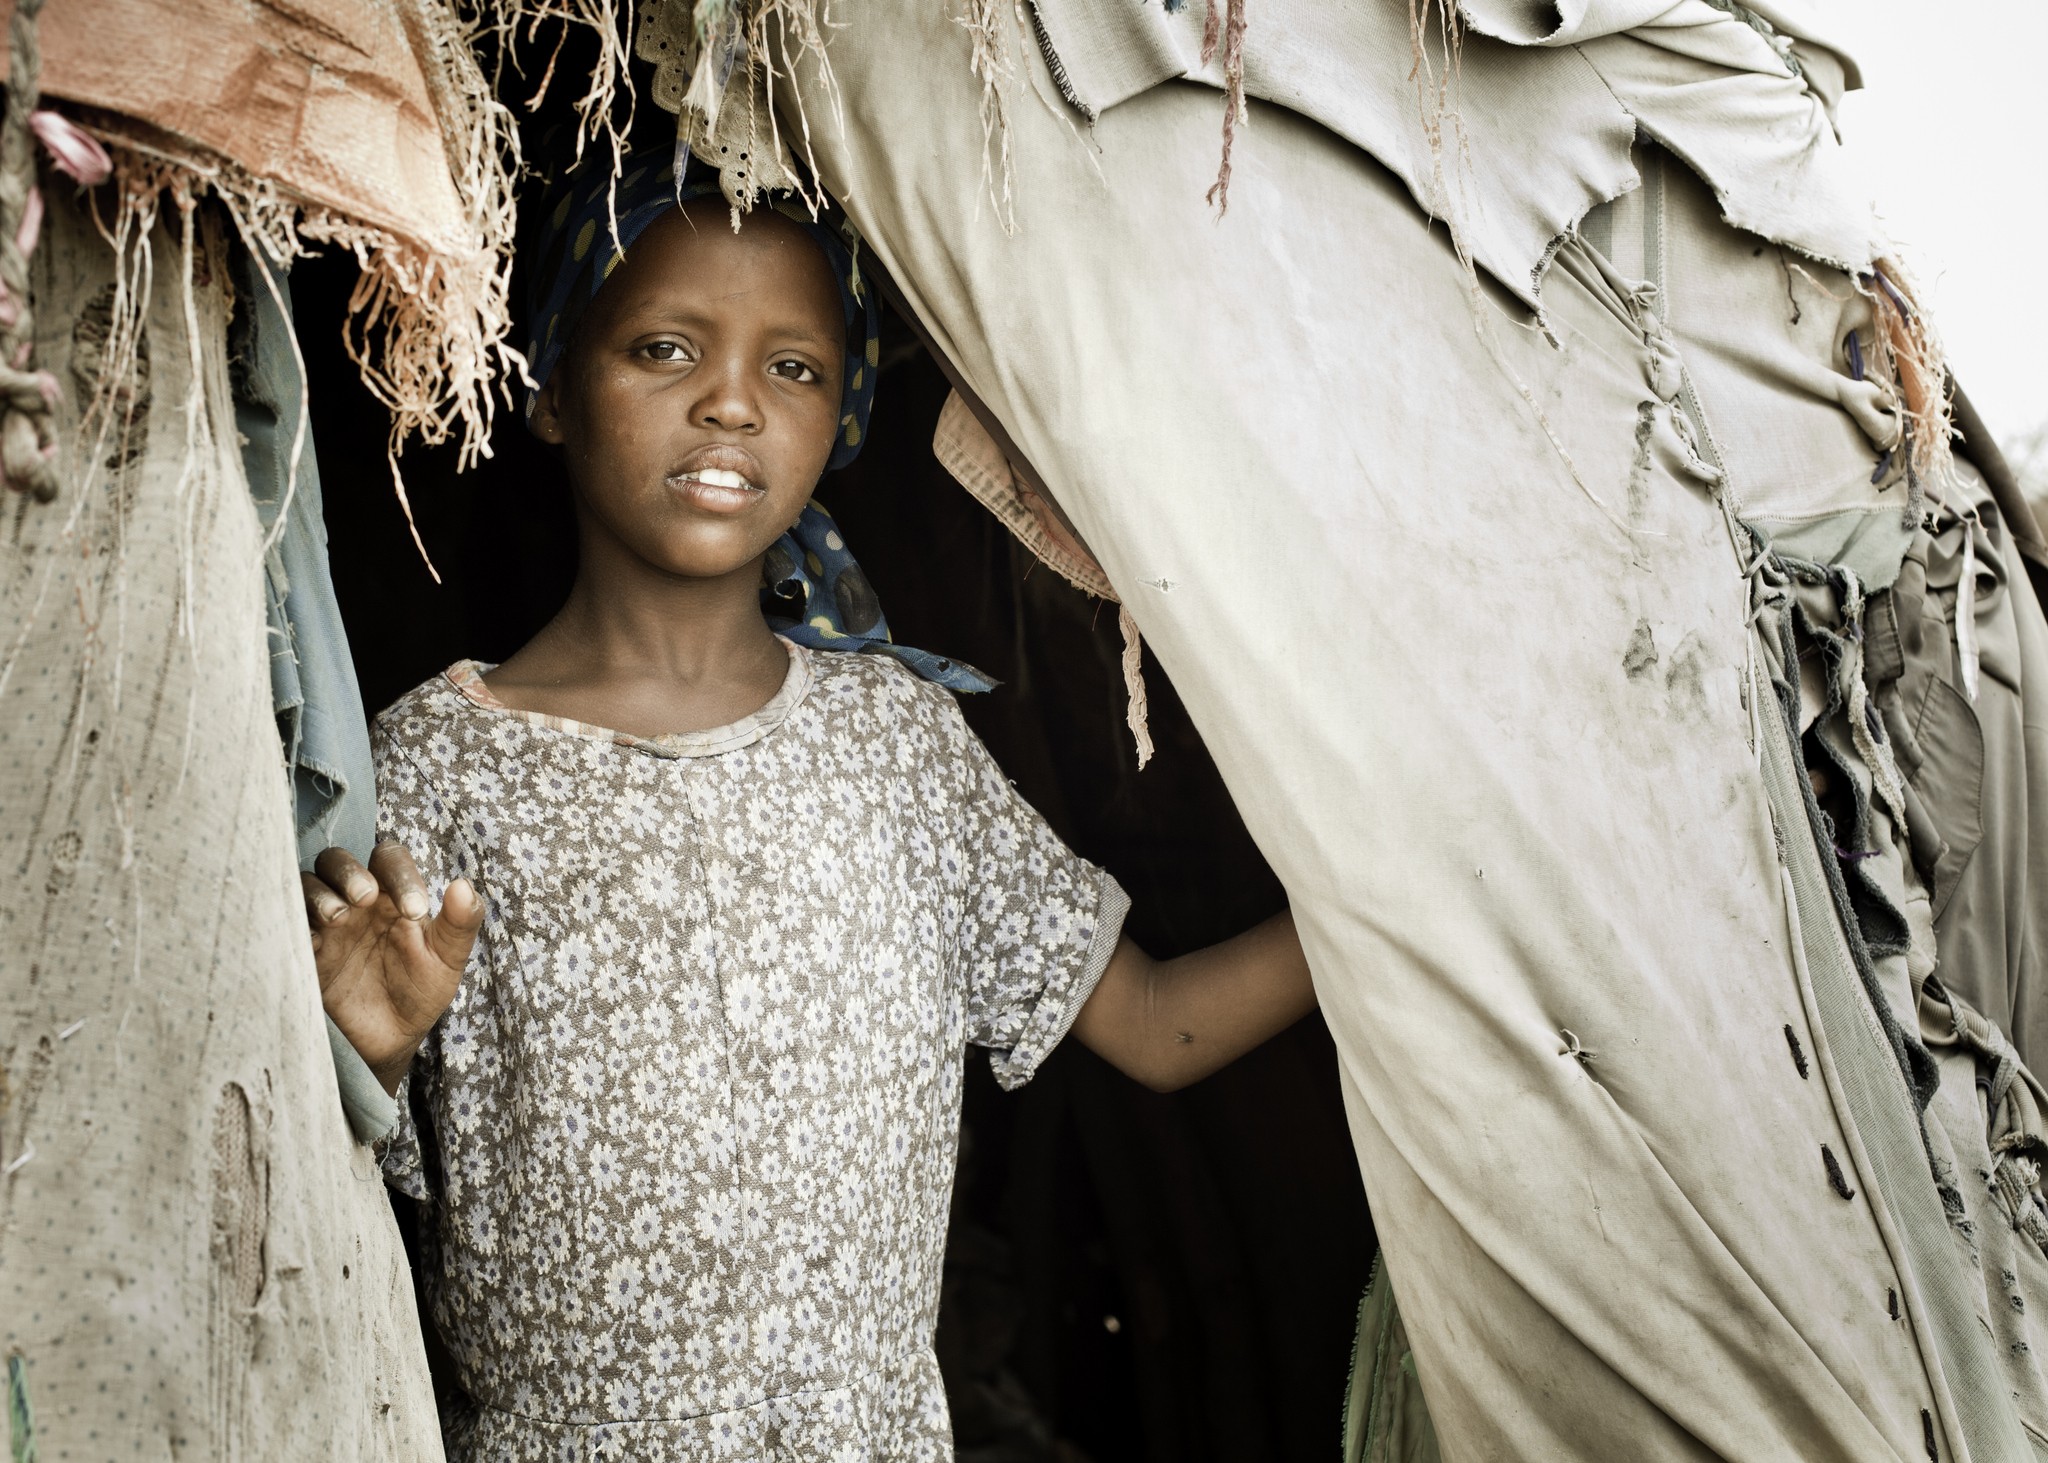 Somalia permitirá casamento infantil assim que orgãos reprodutores femininos das meninas 'amadurecerem' (Foto: Getty Images)